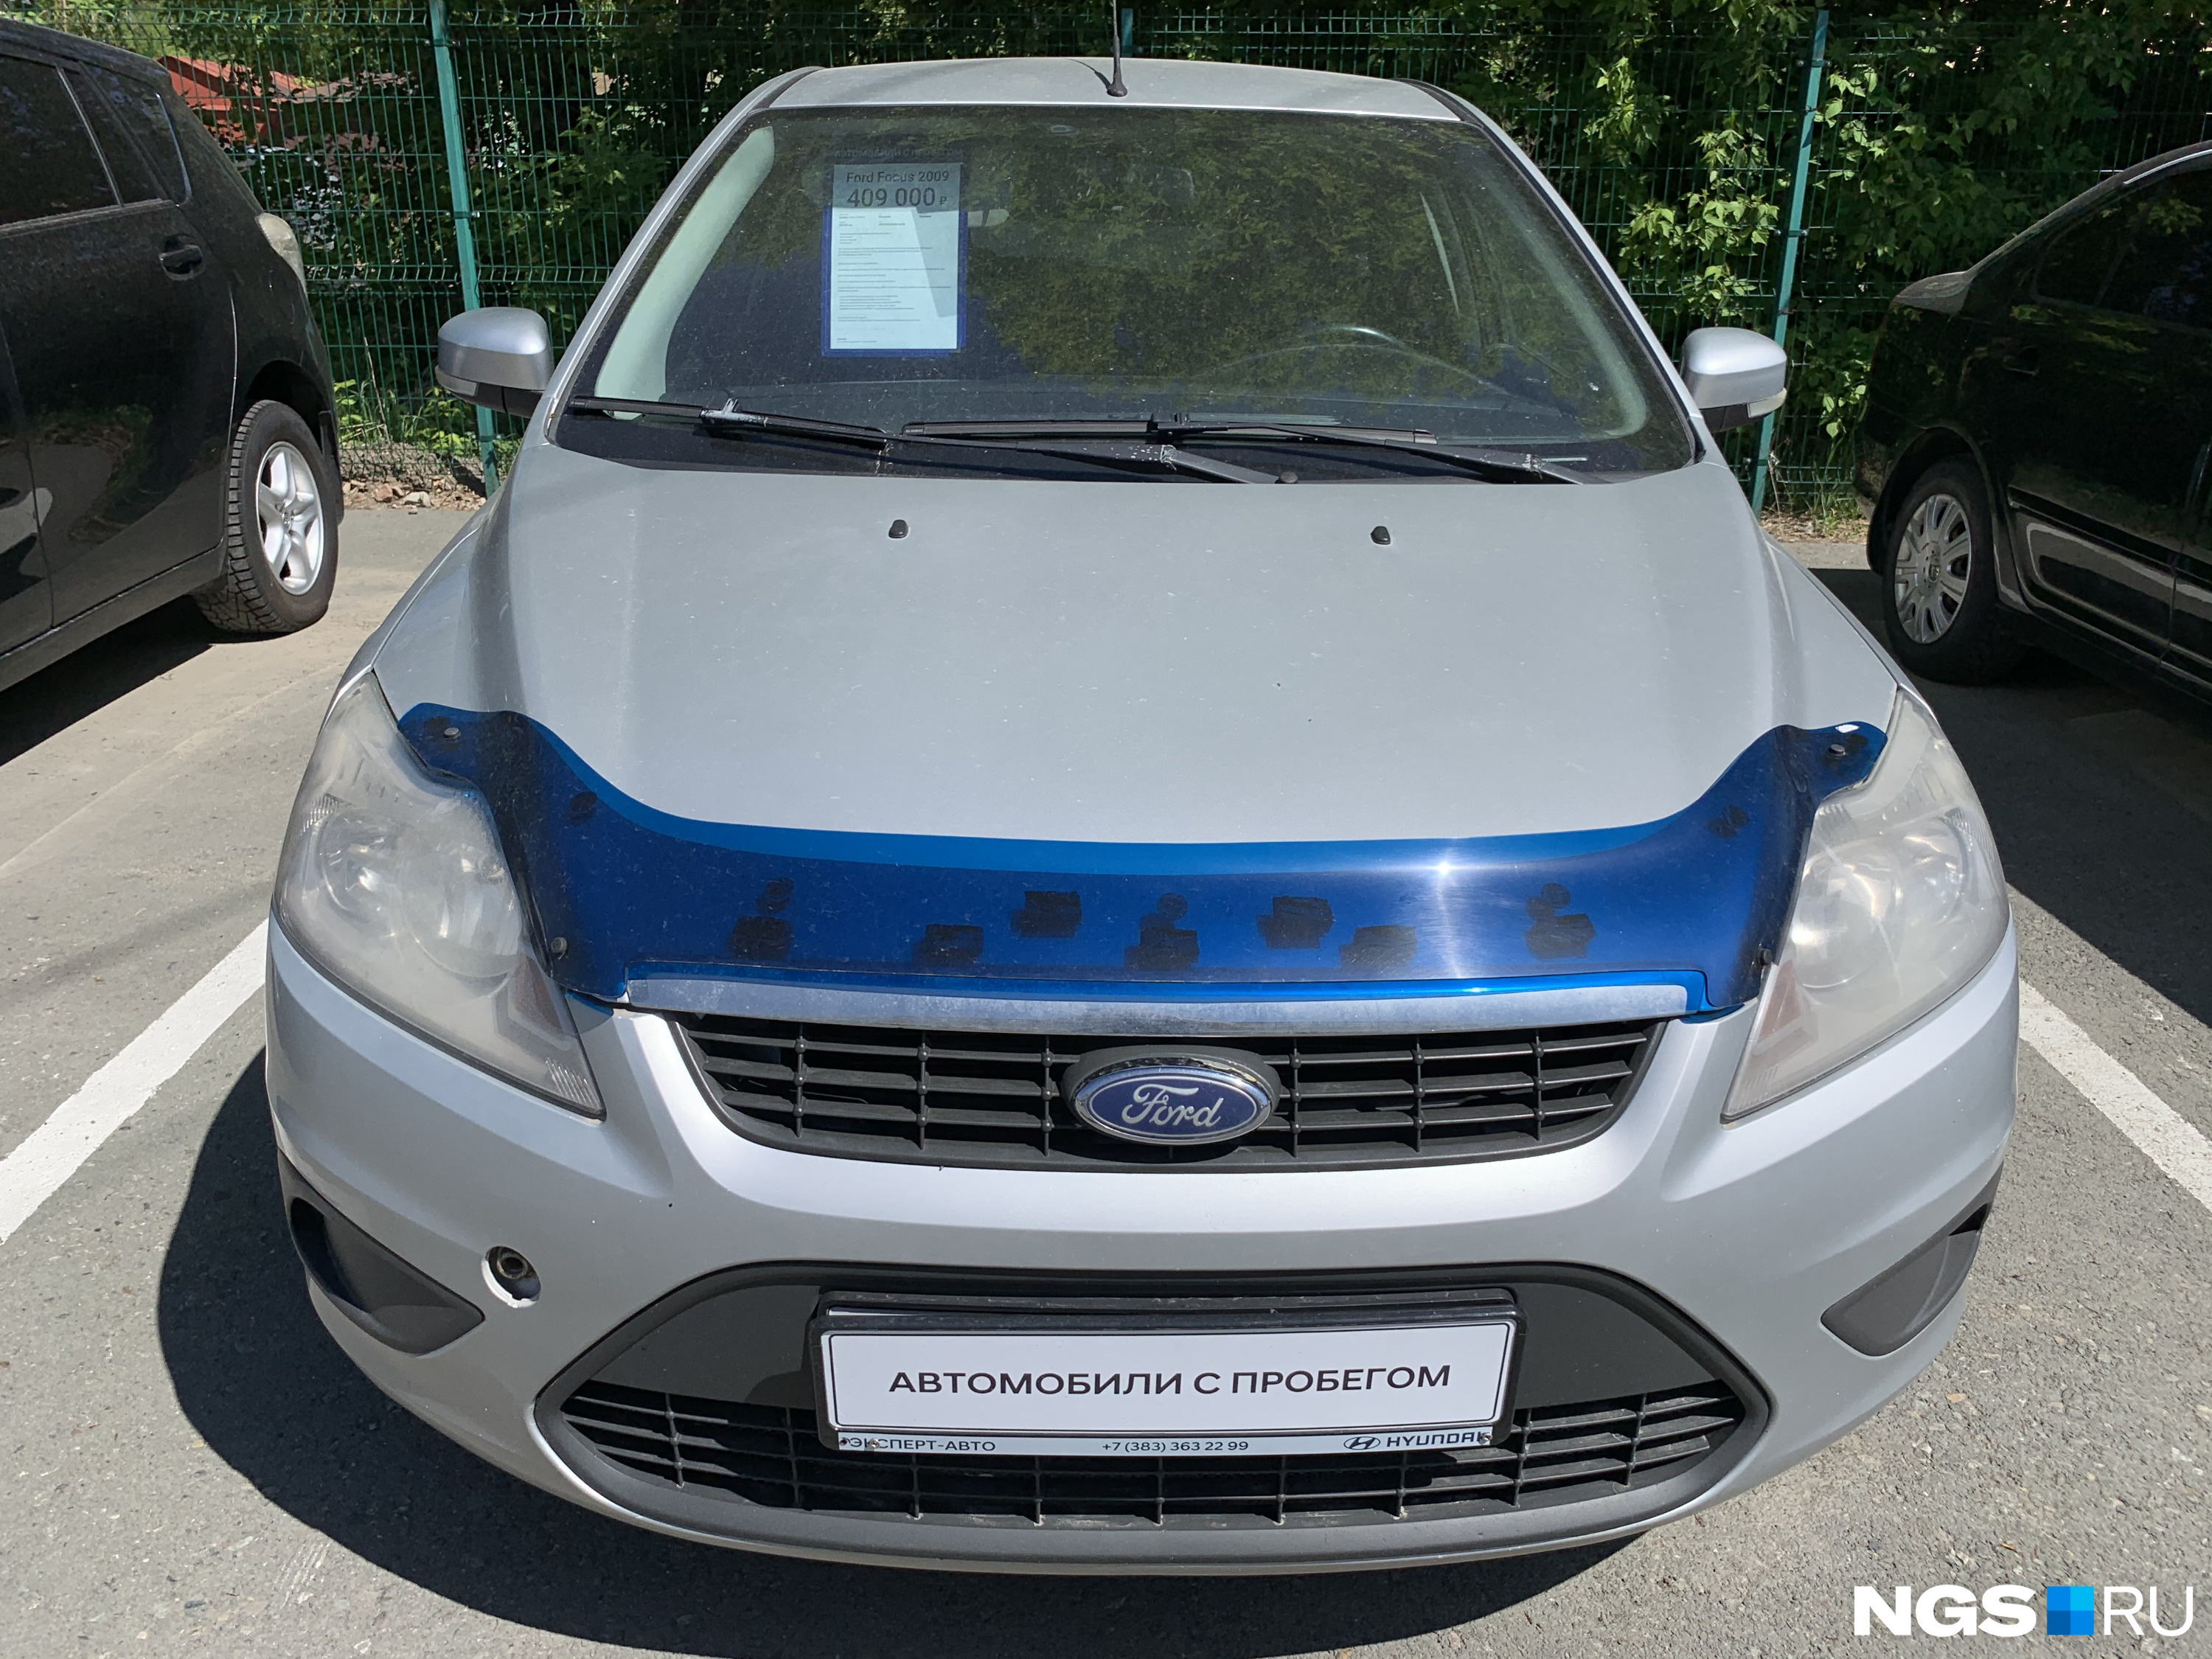 Ford Focus — многолетний лидер вторичного рынка в Москве